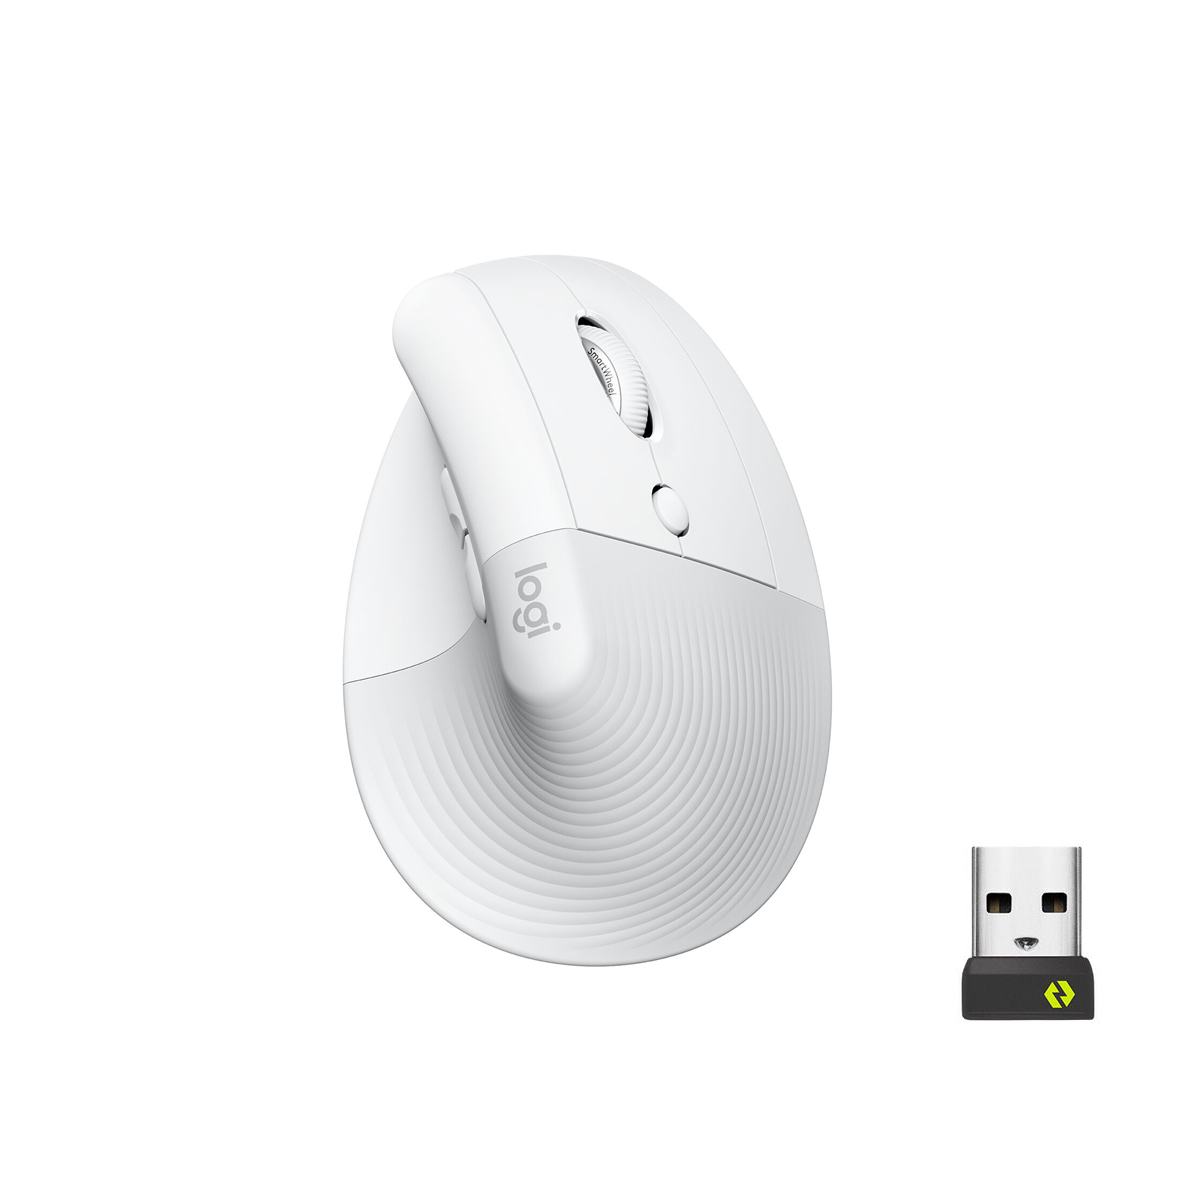 Logitech Lift Vertical Ergonomic Mouse Wireless Bluetooth Logi Bolt USB receiver, Quiet clicks, 4 buttons